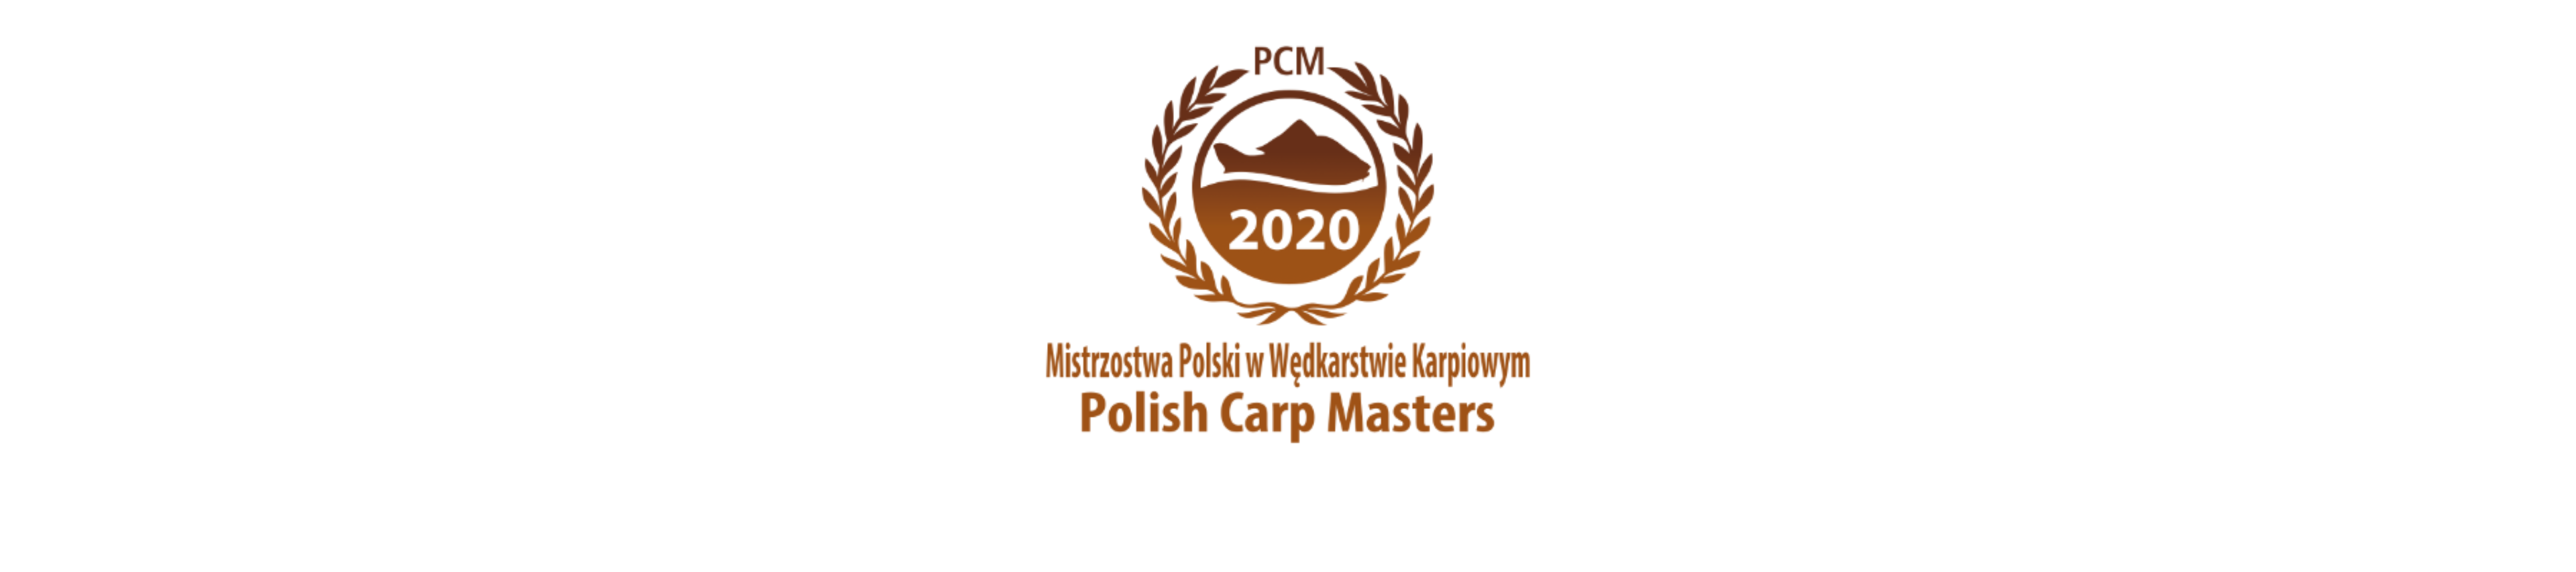 PCM 2020